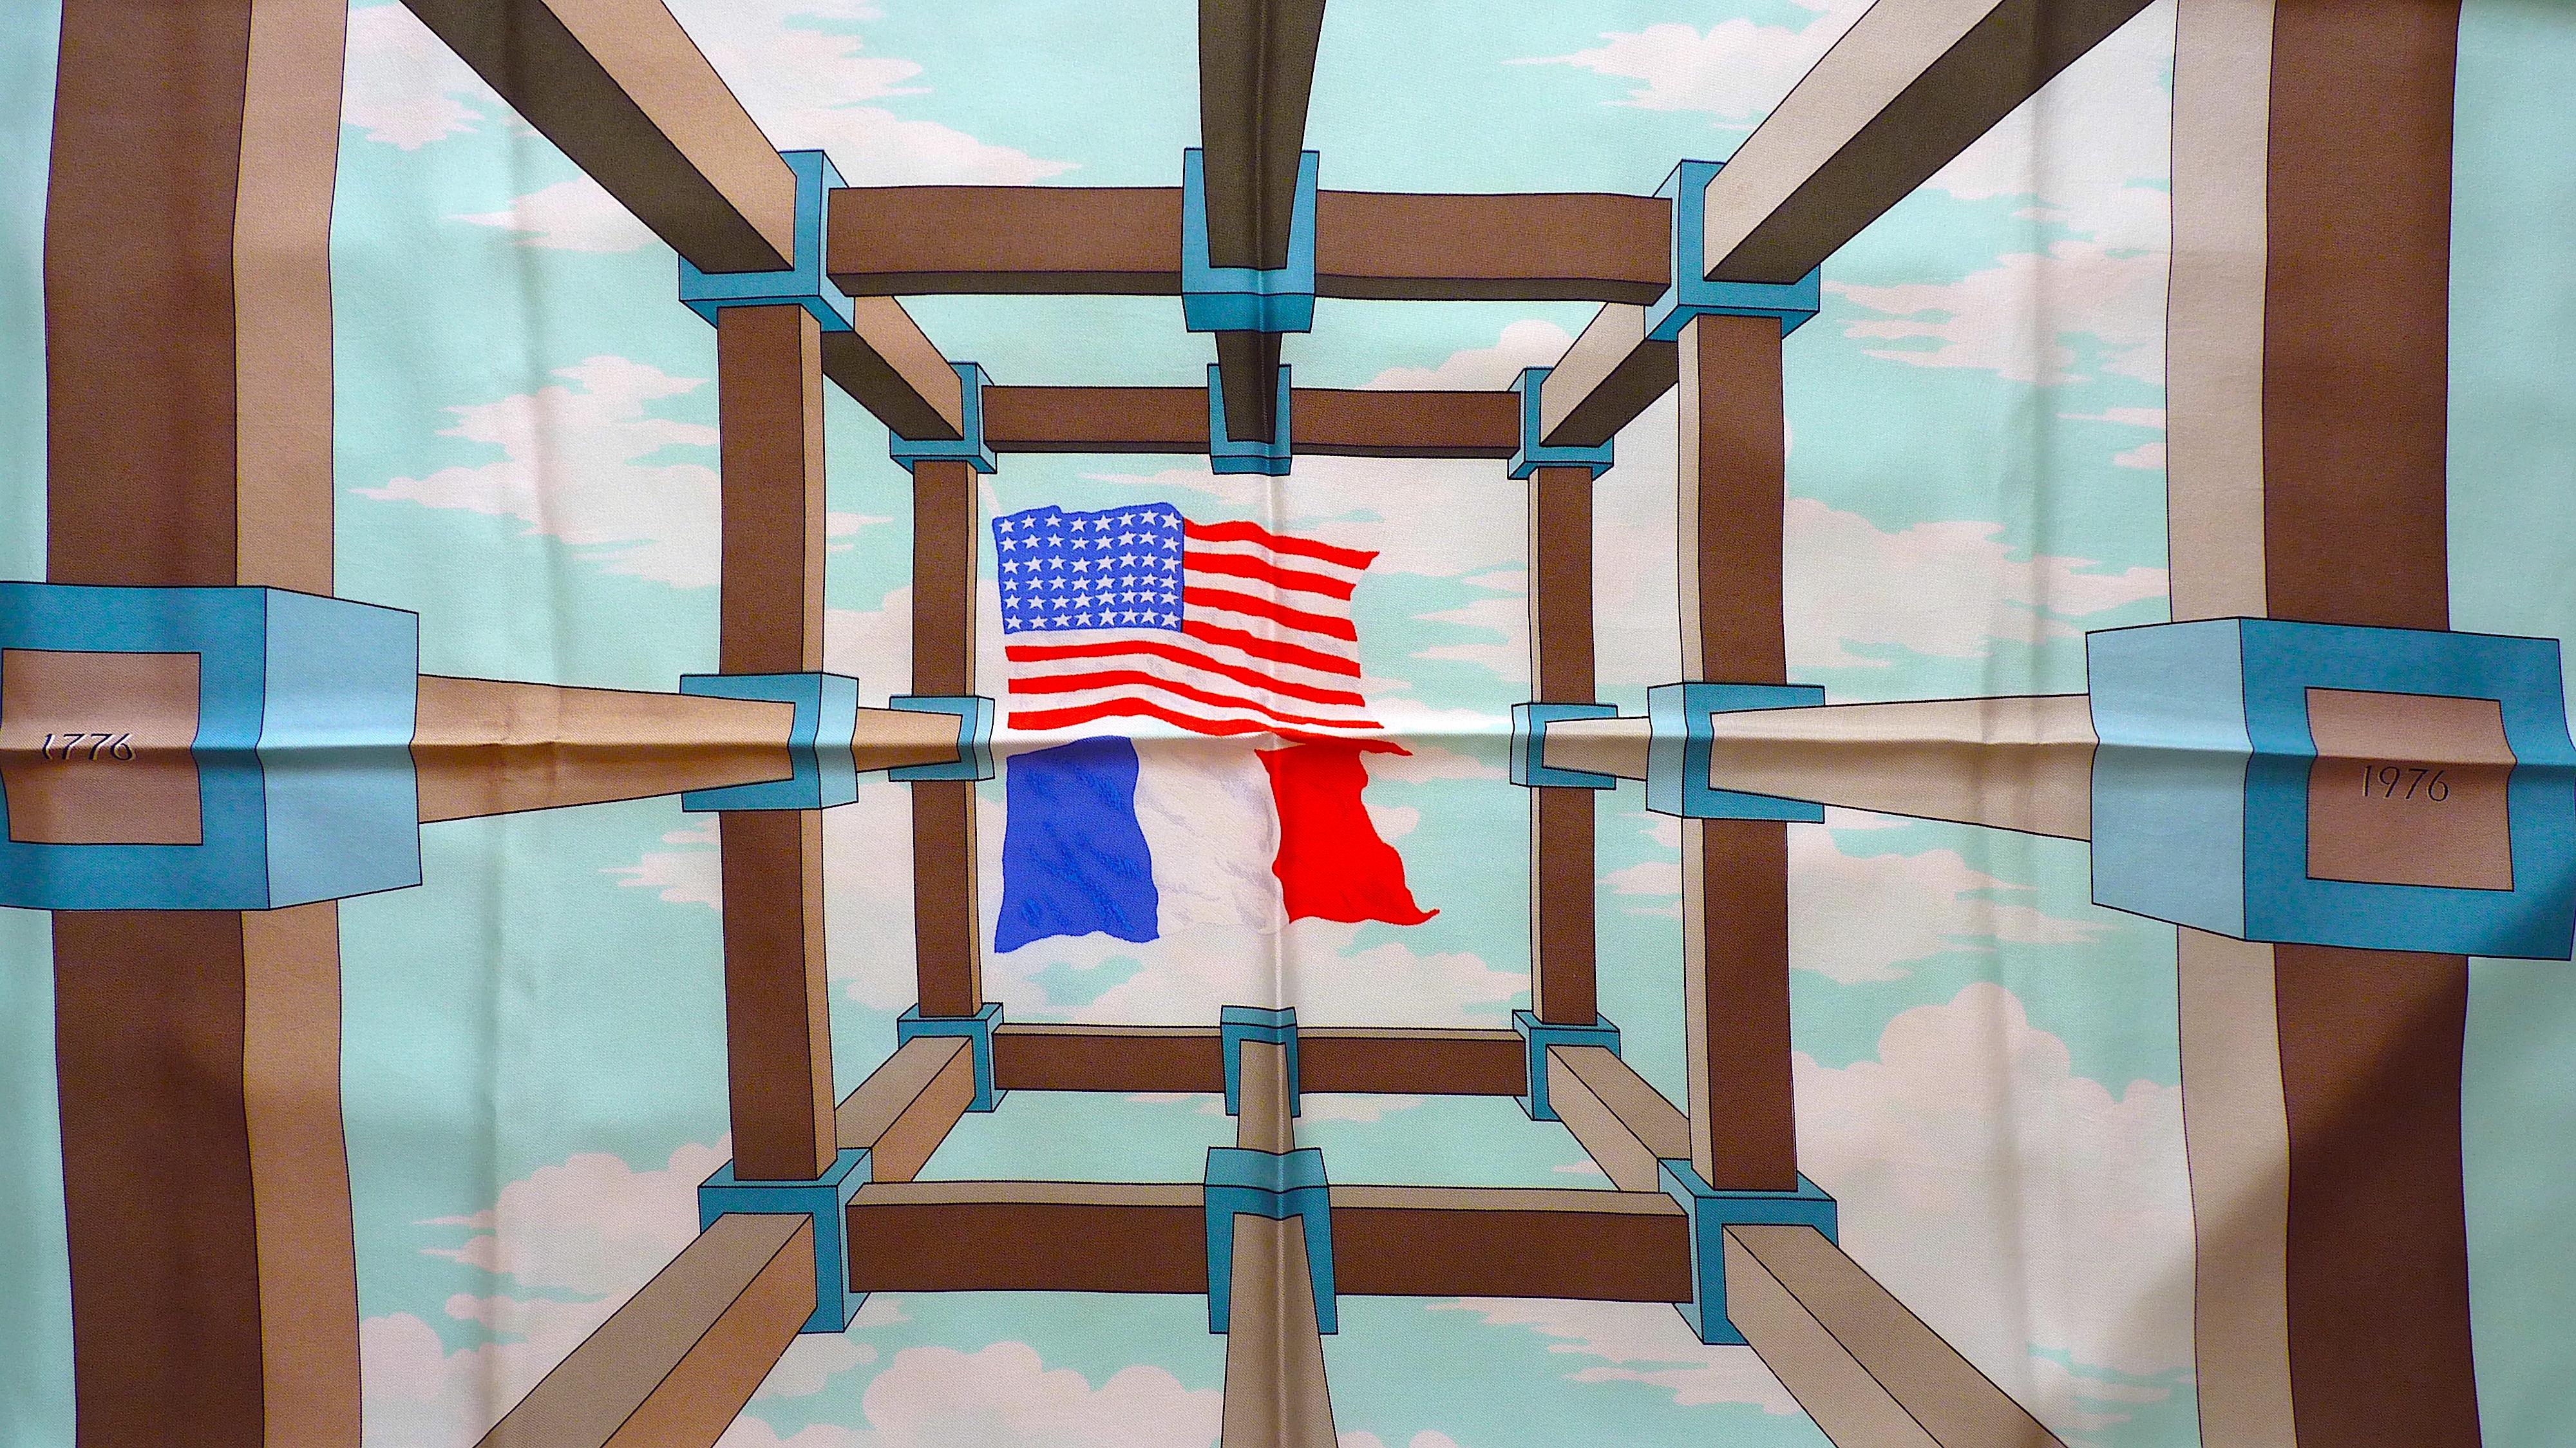 Très rare foulard Hermès Perspective Edition spéciale imprimée en 1976 pour le Bicentenaire des Etats-Unis d'Amérique, et pour célébrer l'amitié franco-américaine.
Les drapeaux américain et français sont au centre du motif, et la mention 17 mai